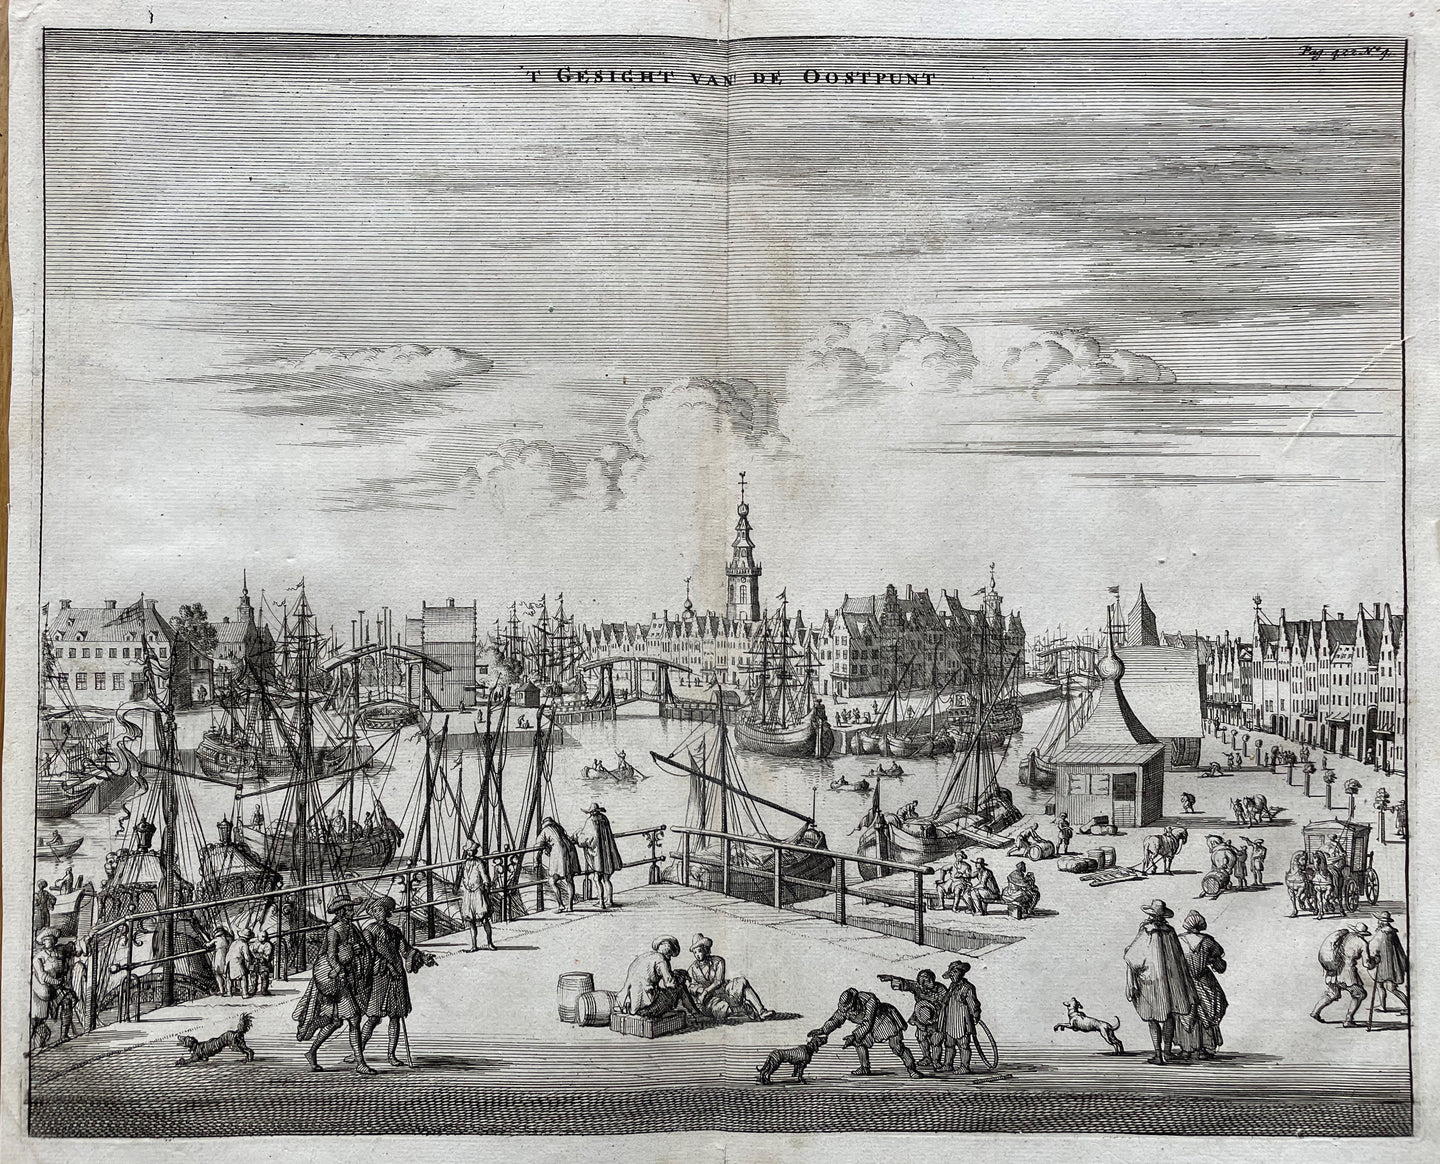 Middelburg Gezicht van de Oostpunt - M Smallegange - 1696